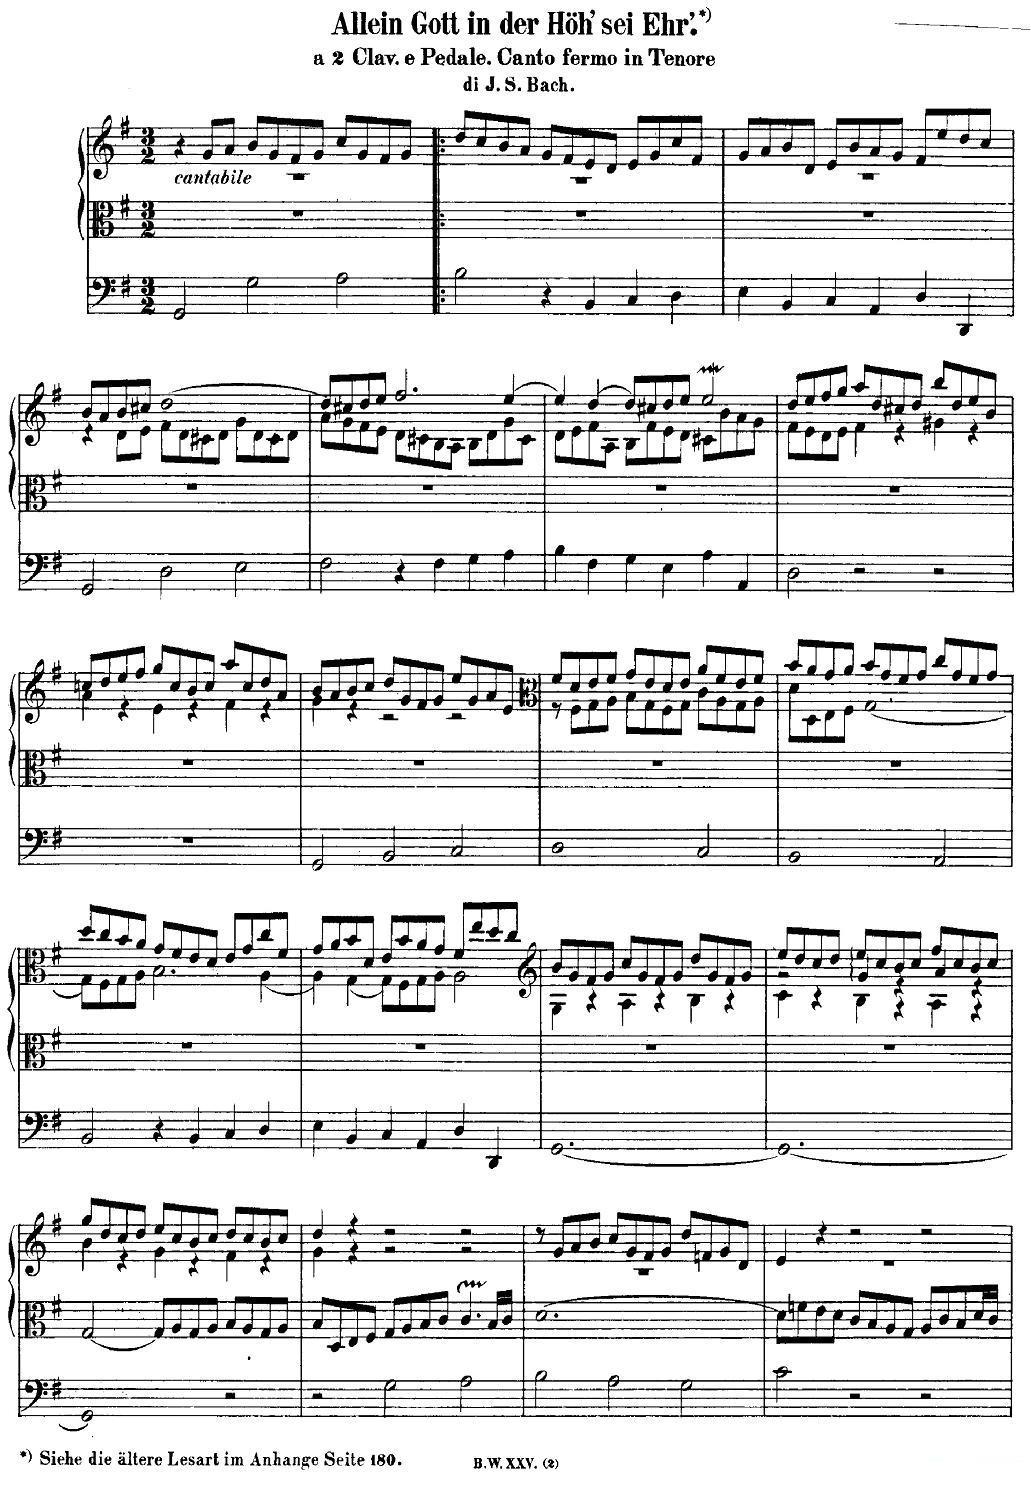 巴赫18首赞美诗前奏曲（13）（双排键电子琴）(1).jpg